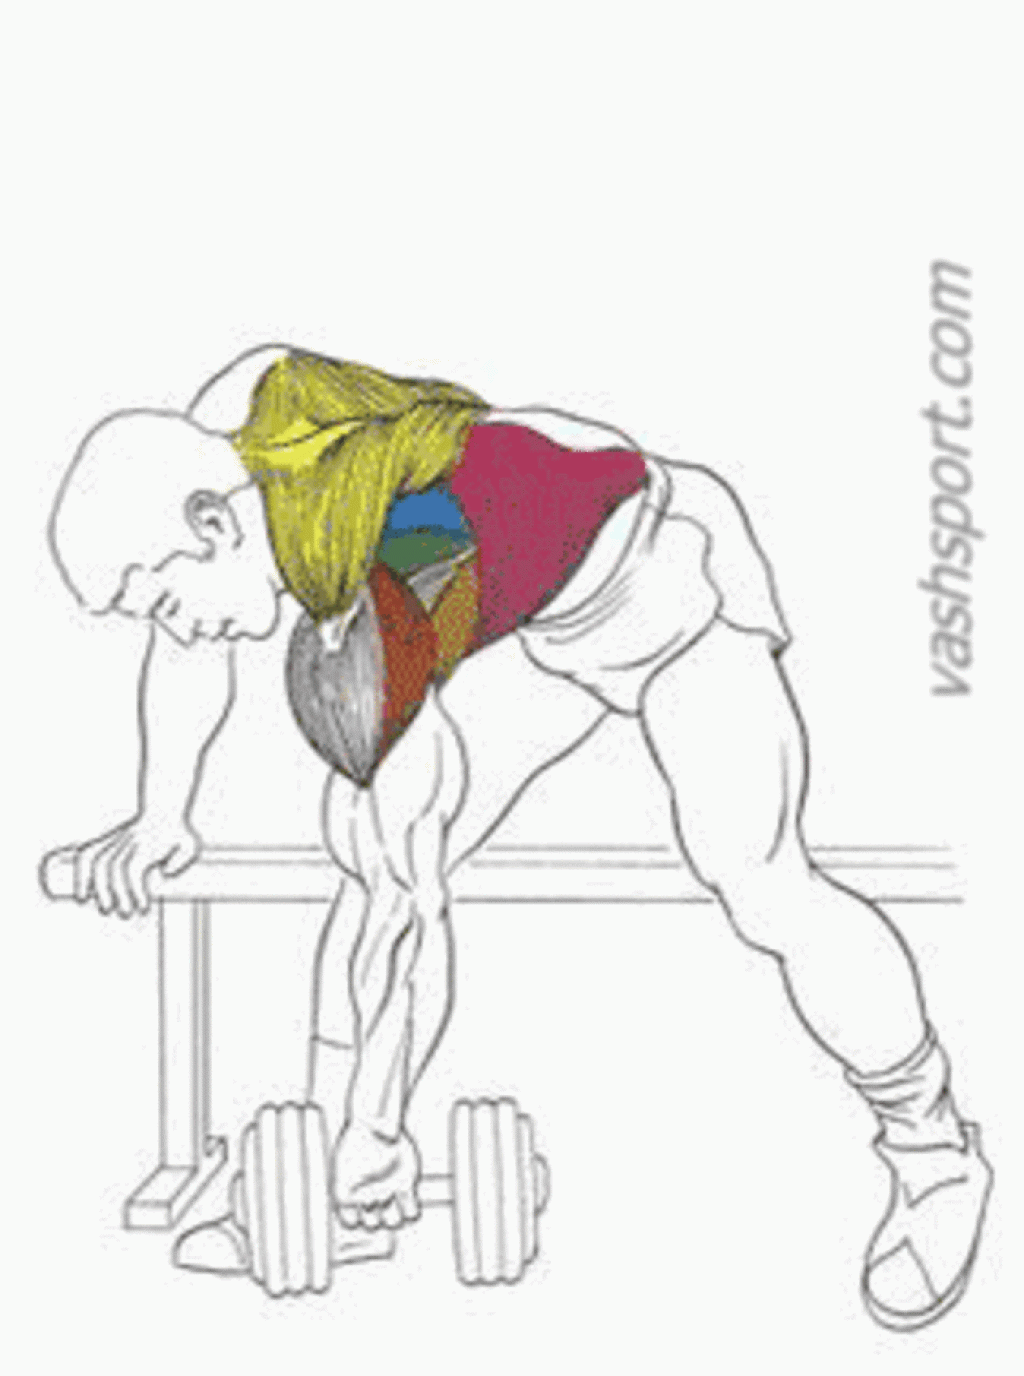 Упражнения для спины и для широчайших мышц спины и трапеции